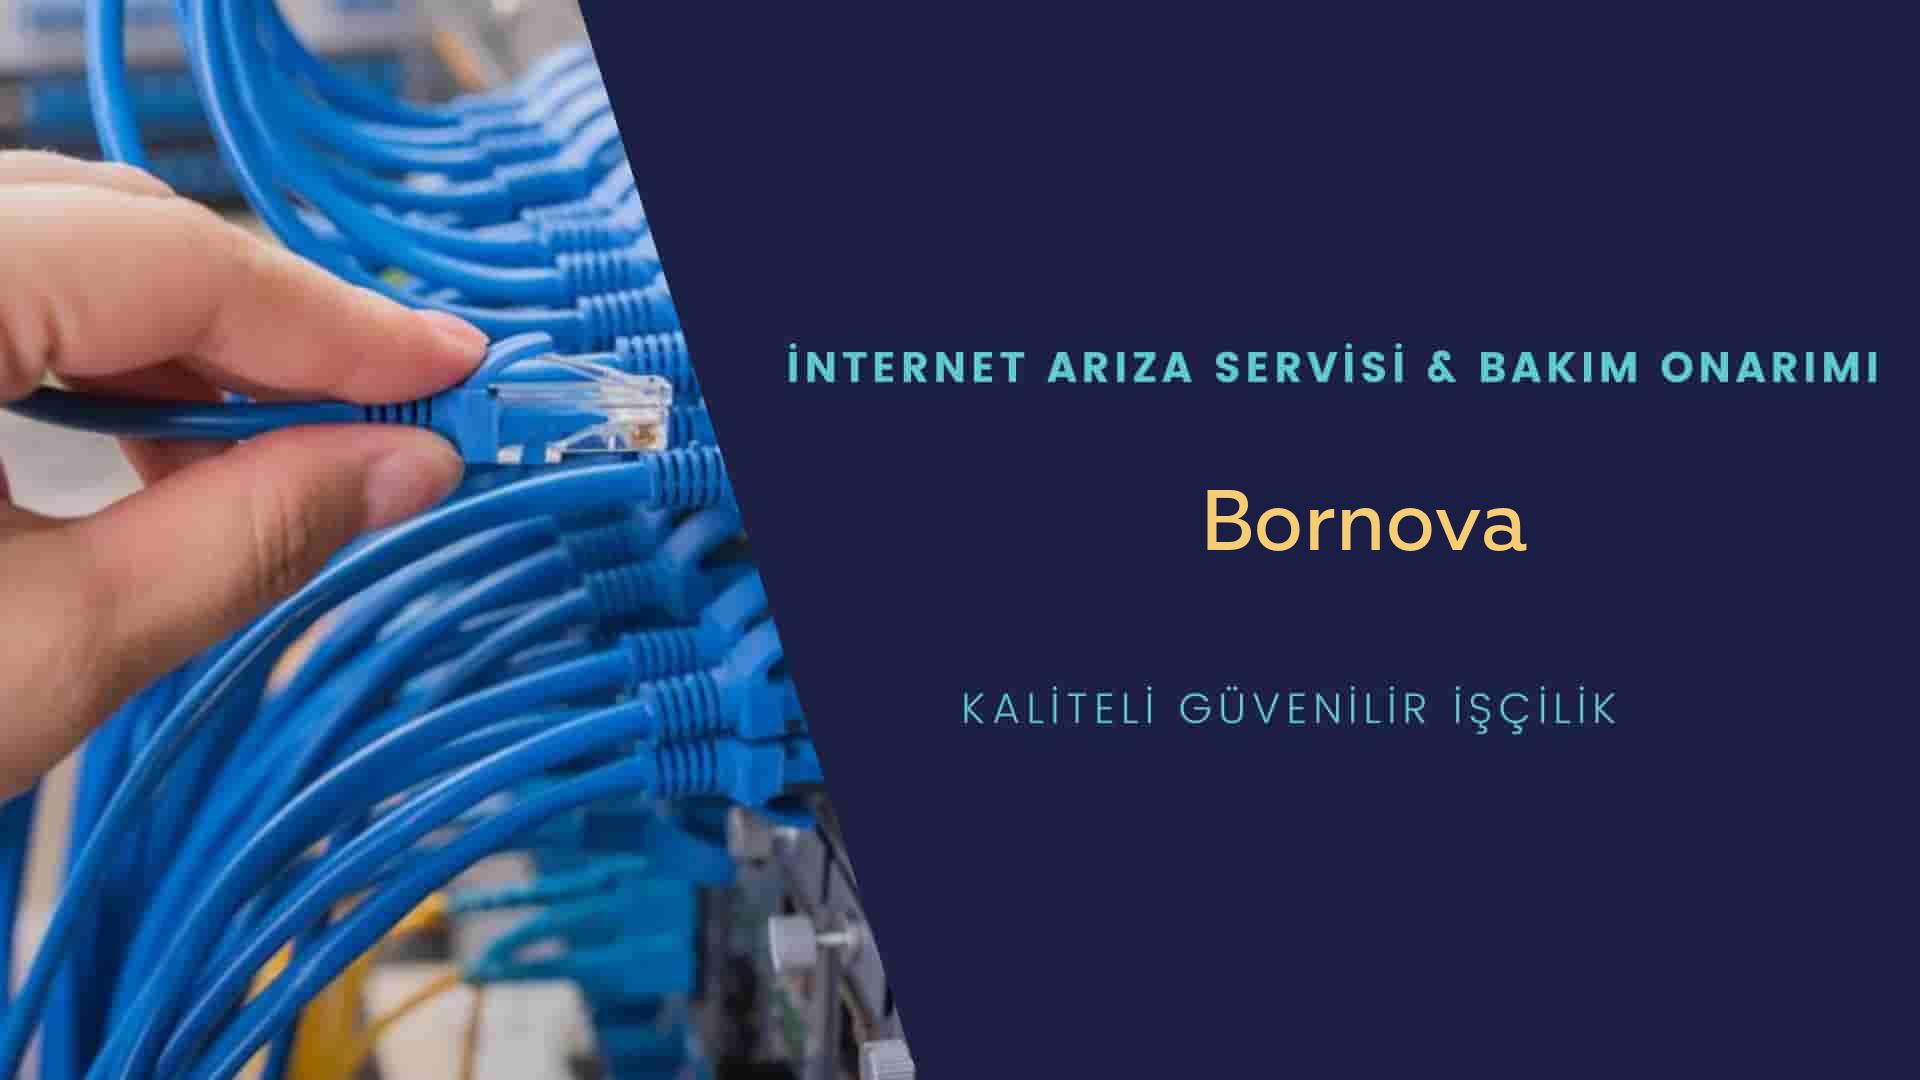 Bornova internet kablosu çekimi yapan yerler veya elektrikçiler mi? arıyorsunuz doğru yerdesiniz o zaman sizlere 7/24 yardımcı olacak profesyonel ustalarımız bir telefon kadar yakındır size.